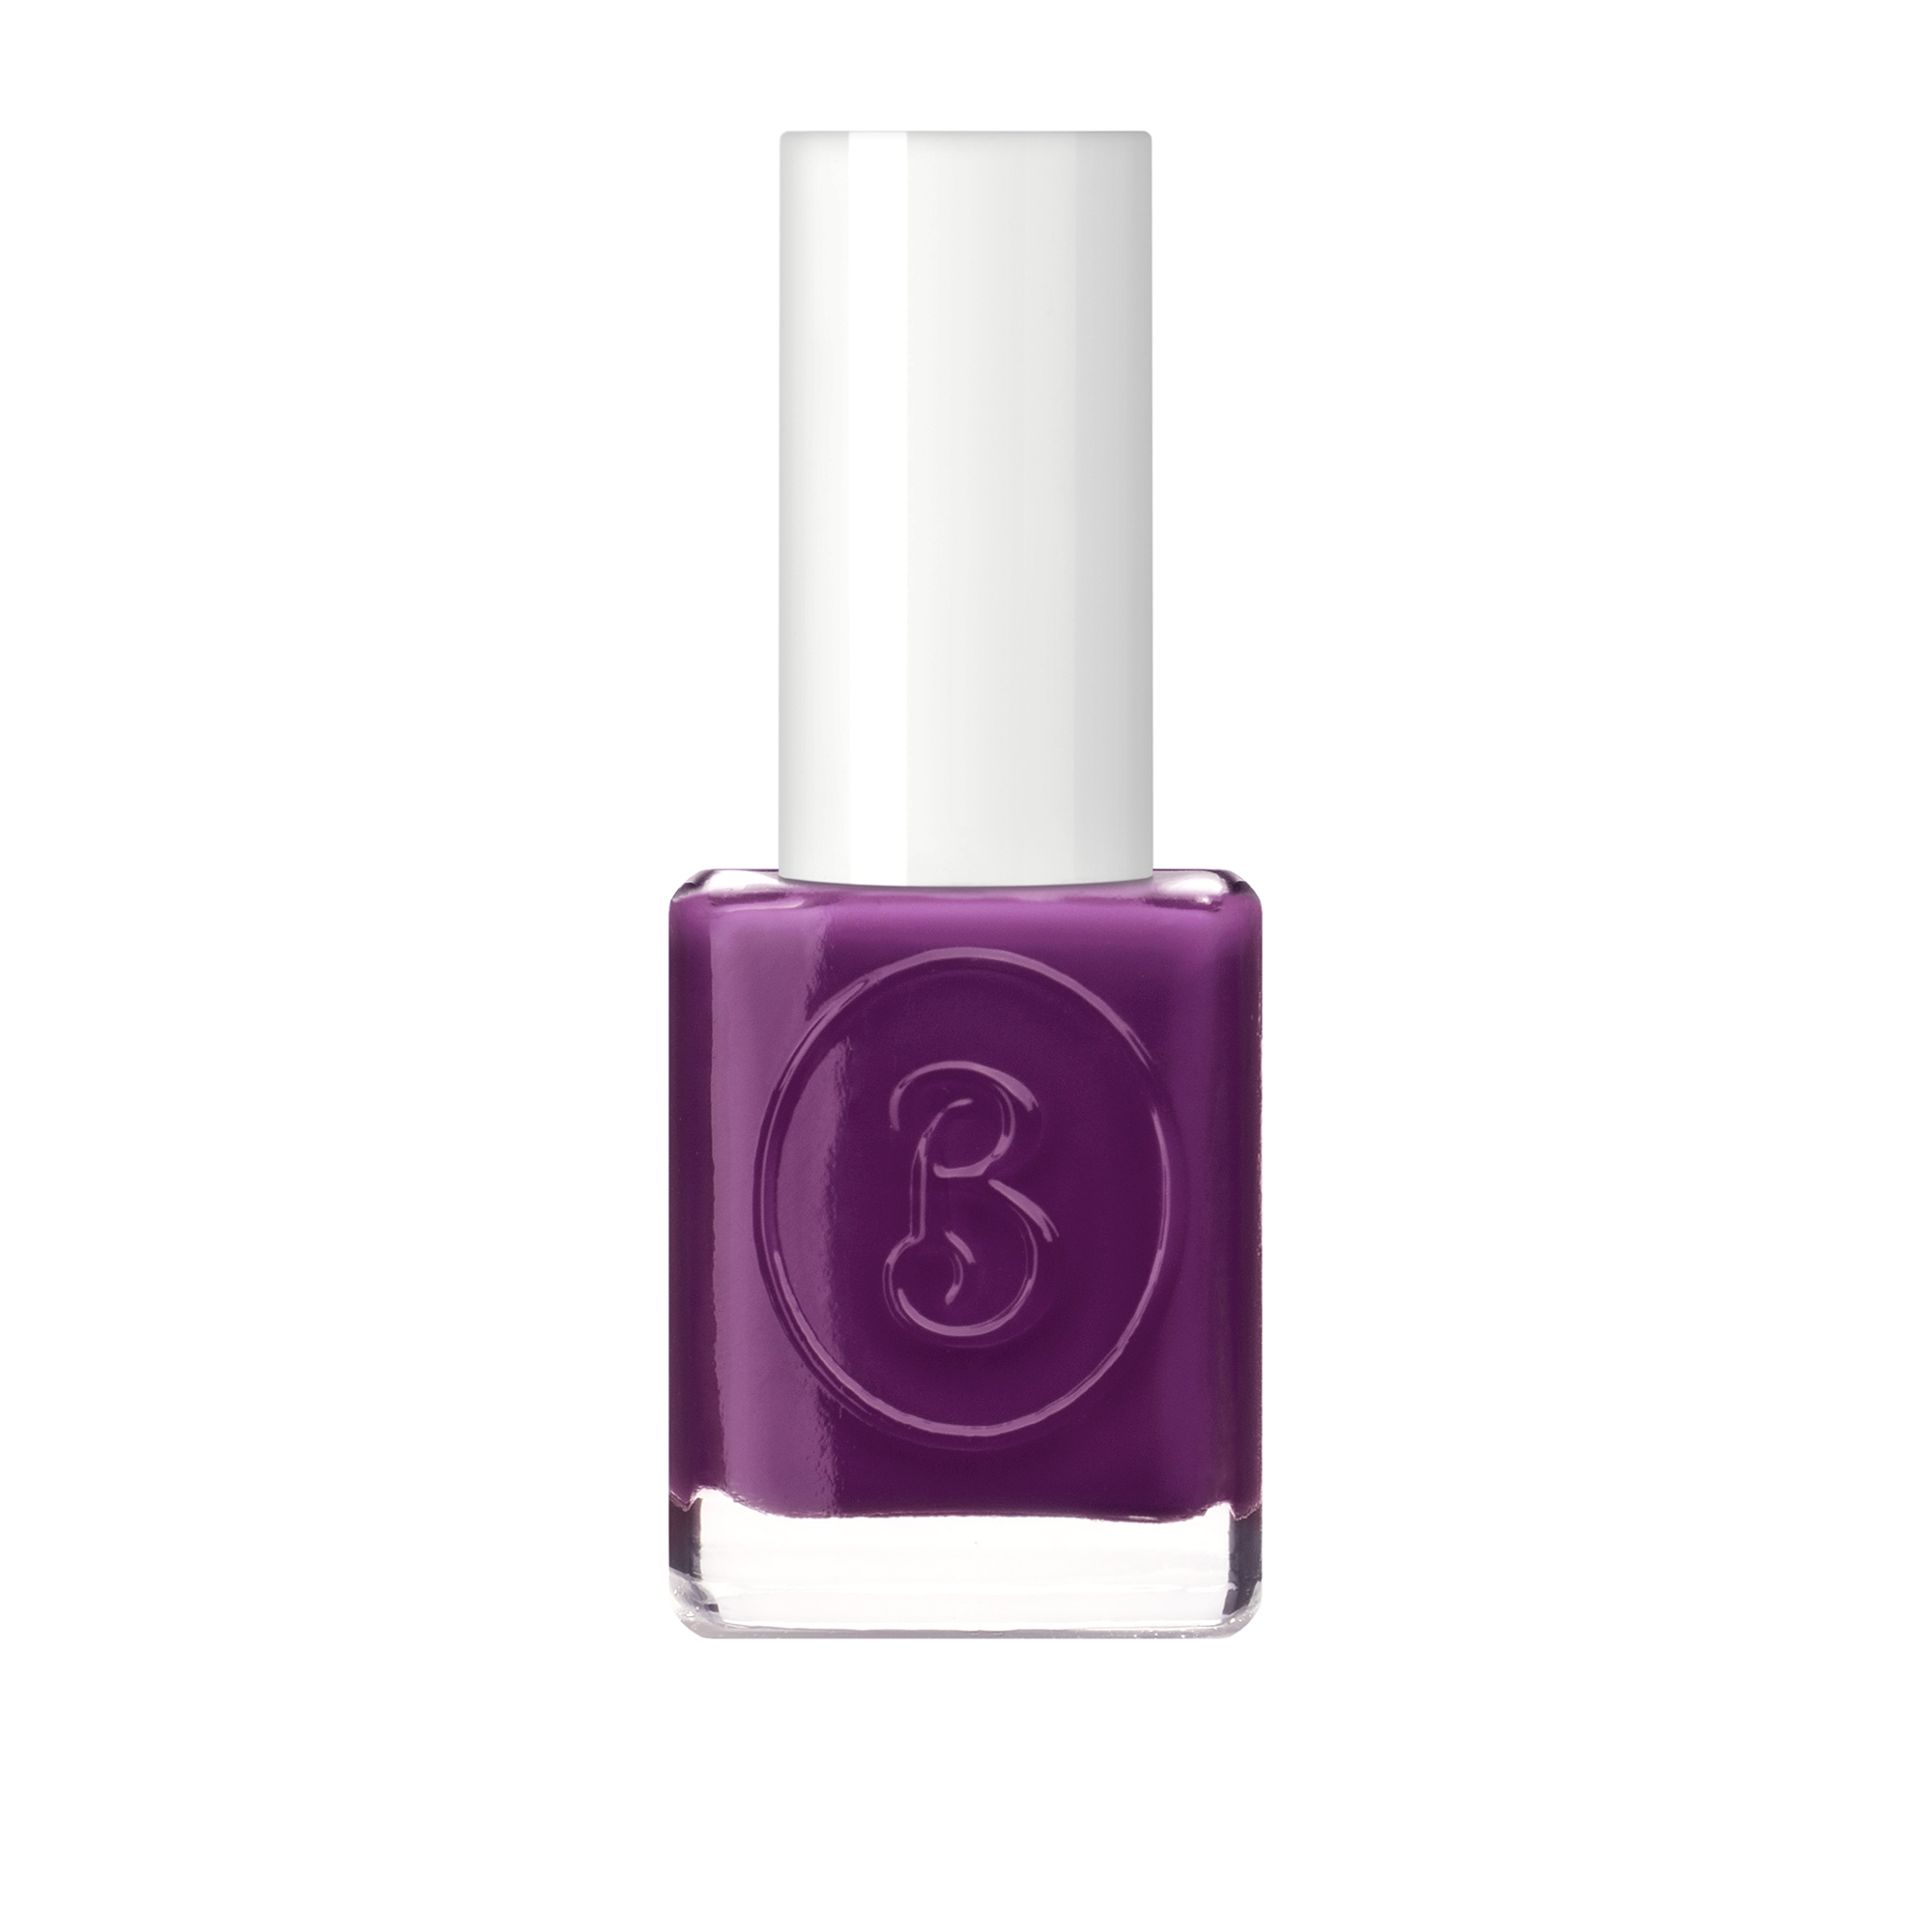 BERENICE 21 лак для ногтей, пурпурный соблазн / Purple tempt